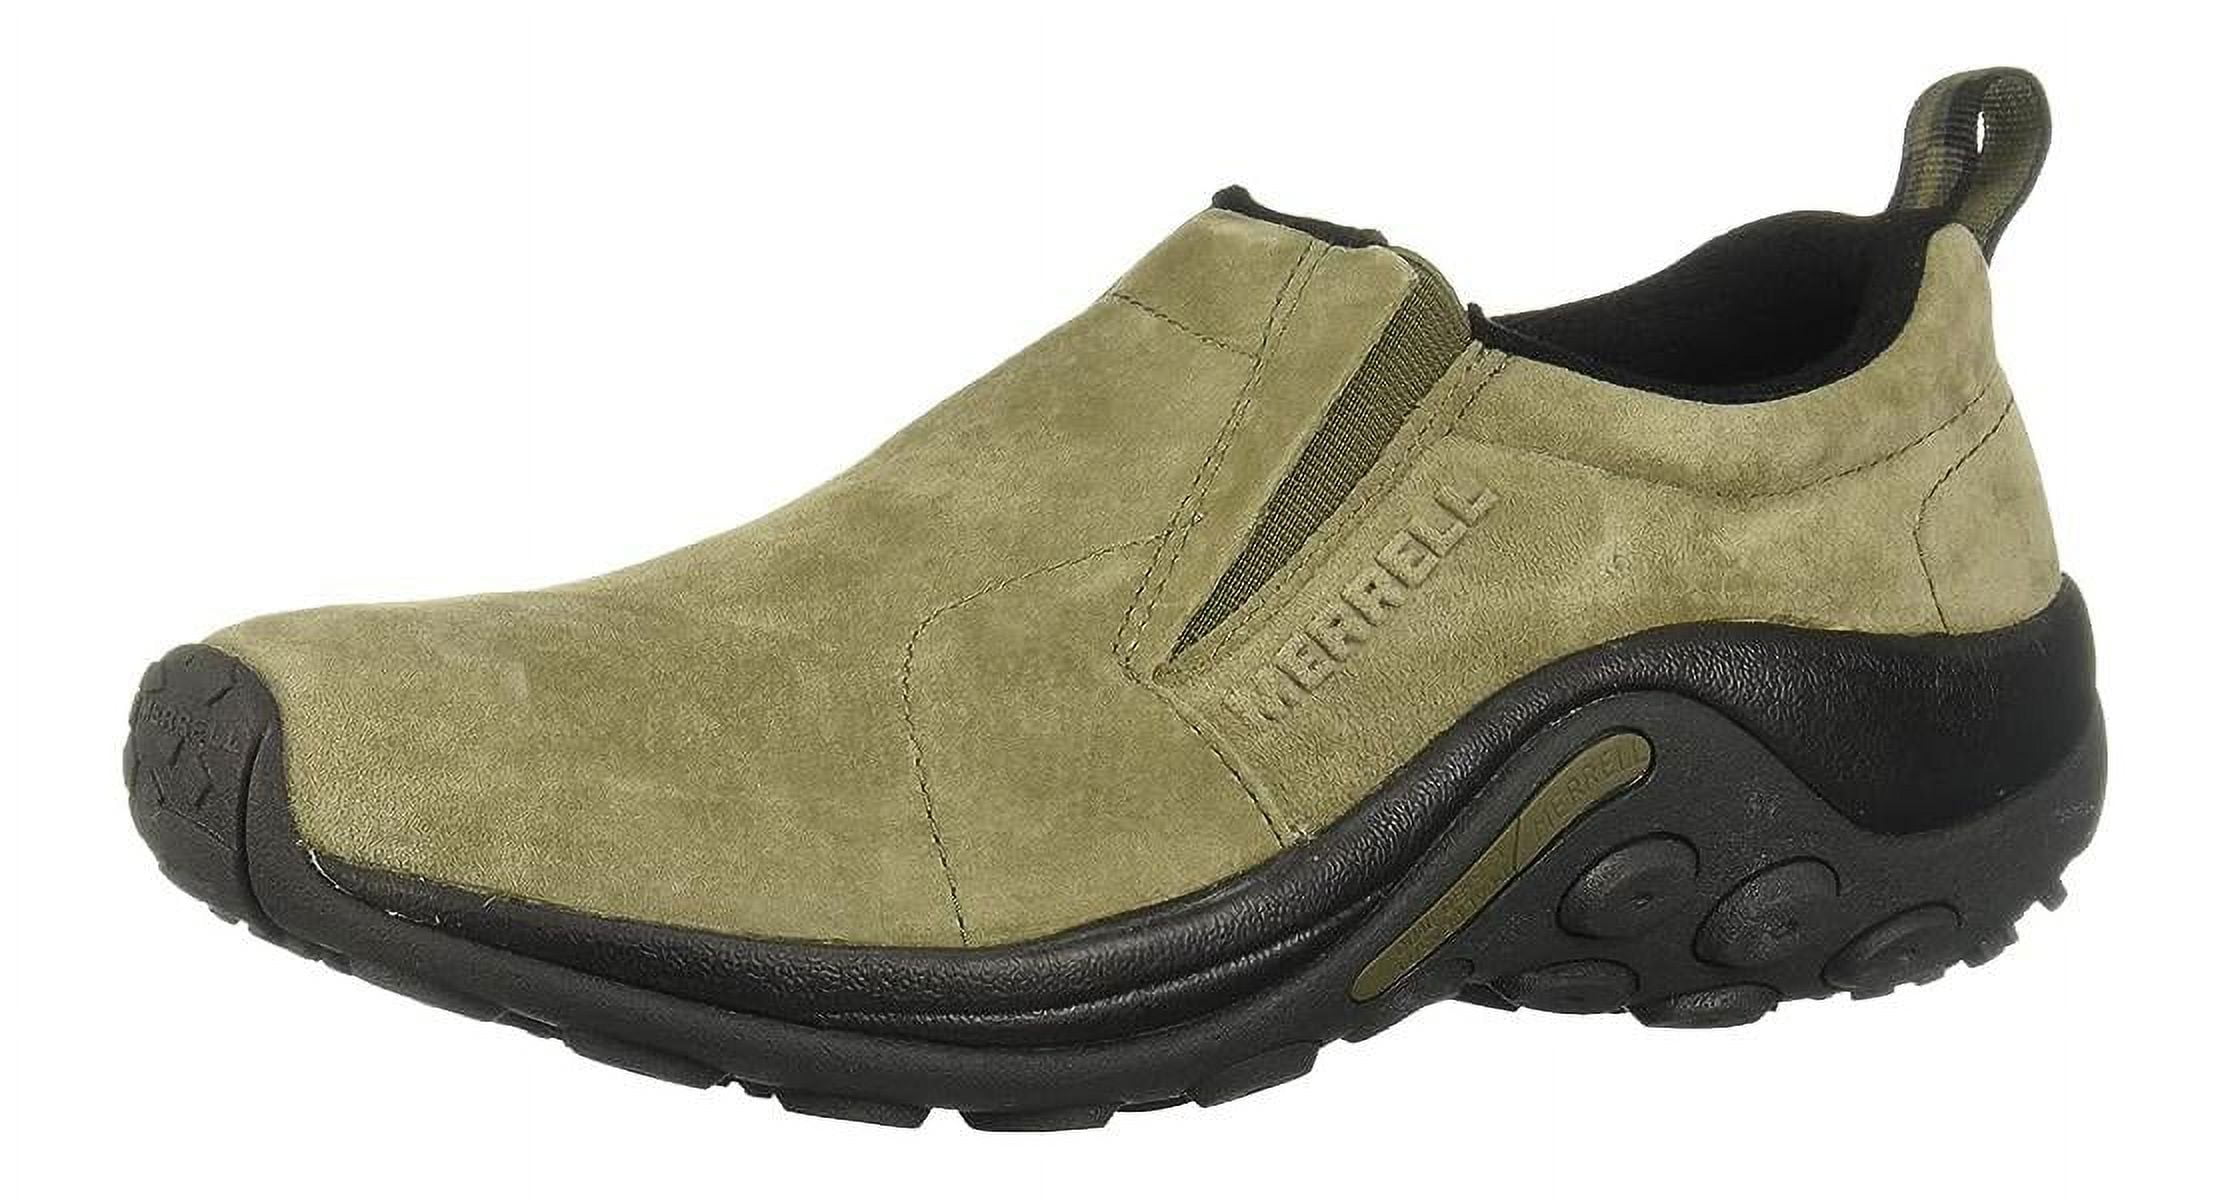 Merrell Mens Jungle Moc Casual Shoes - Dusty Olive - 11.5 - Walmart.com